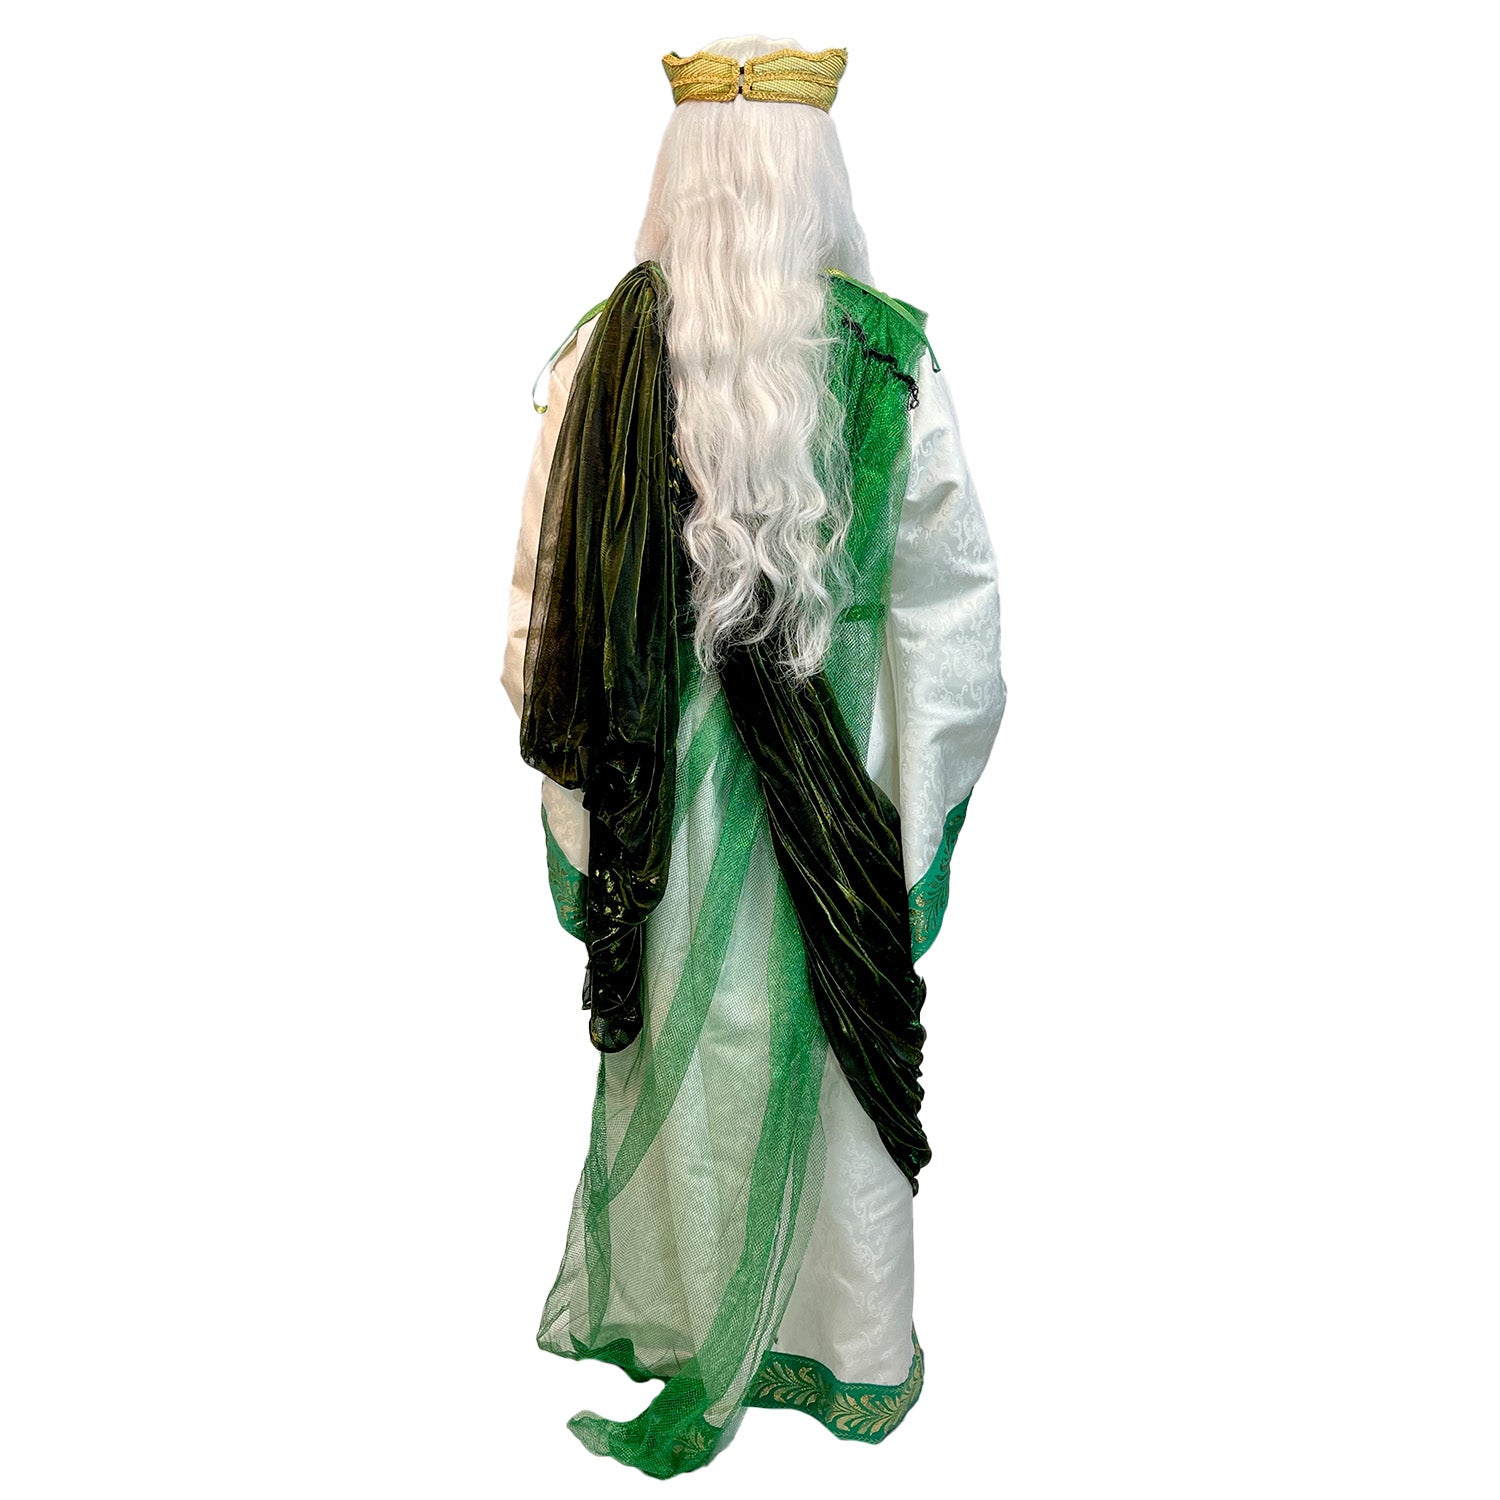 Premium Fairytale King Neptune Adult Costume